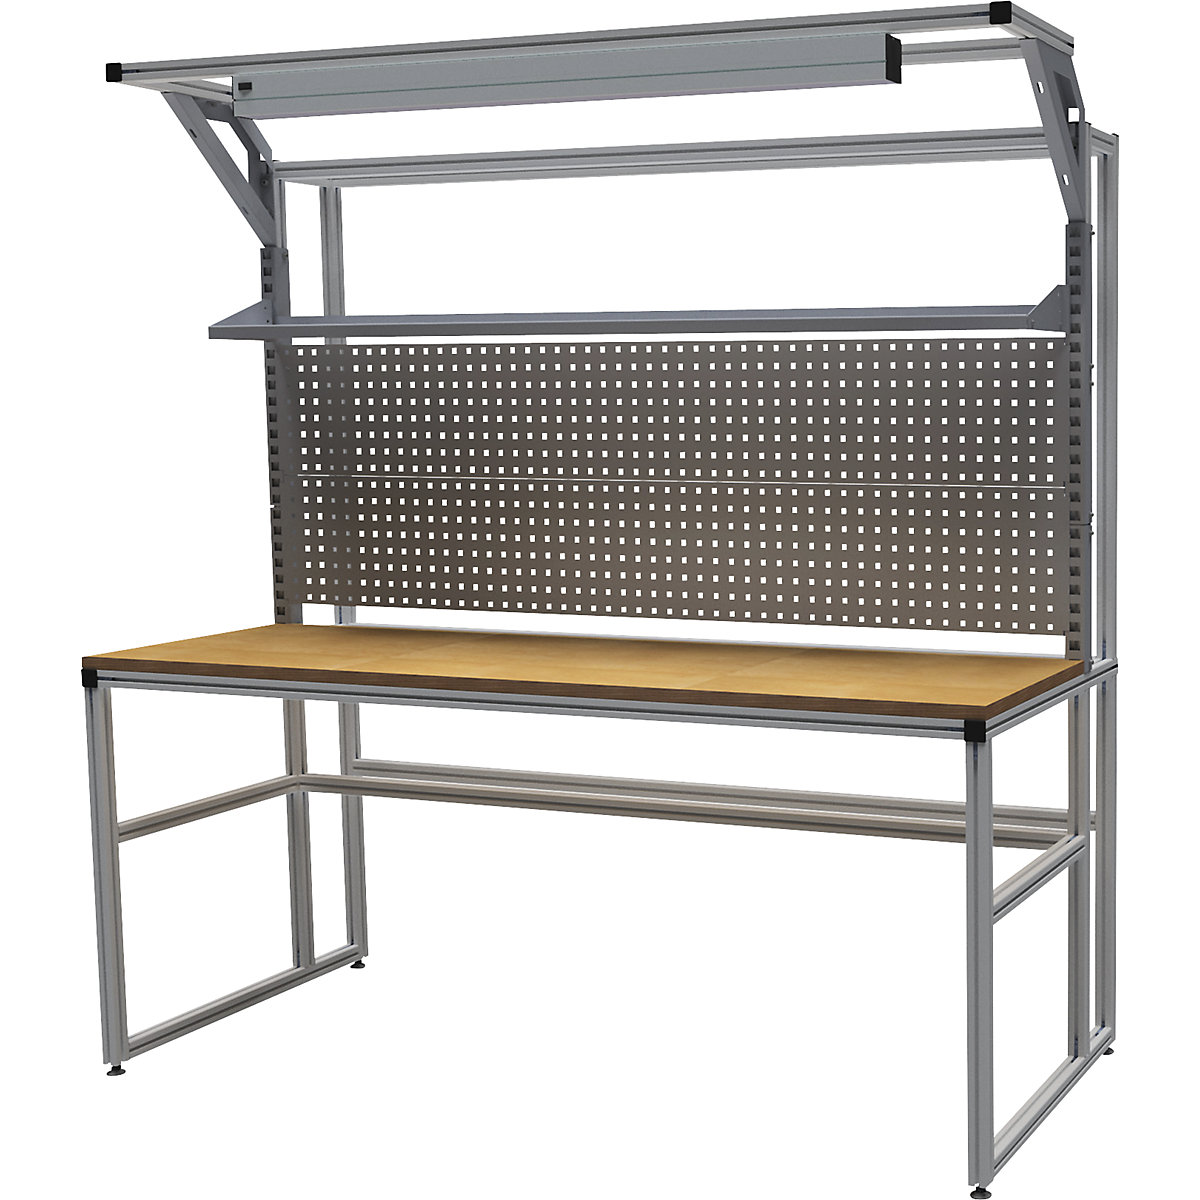 Stół warsztatowy aluminiowy workalu® z modułem systemowym, jednostronny – bedrunka hirth